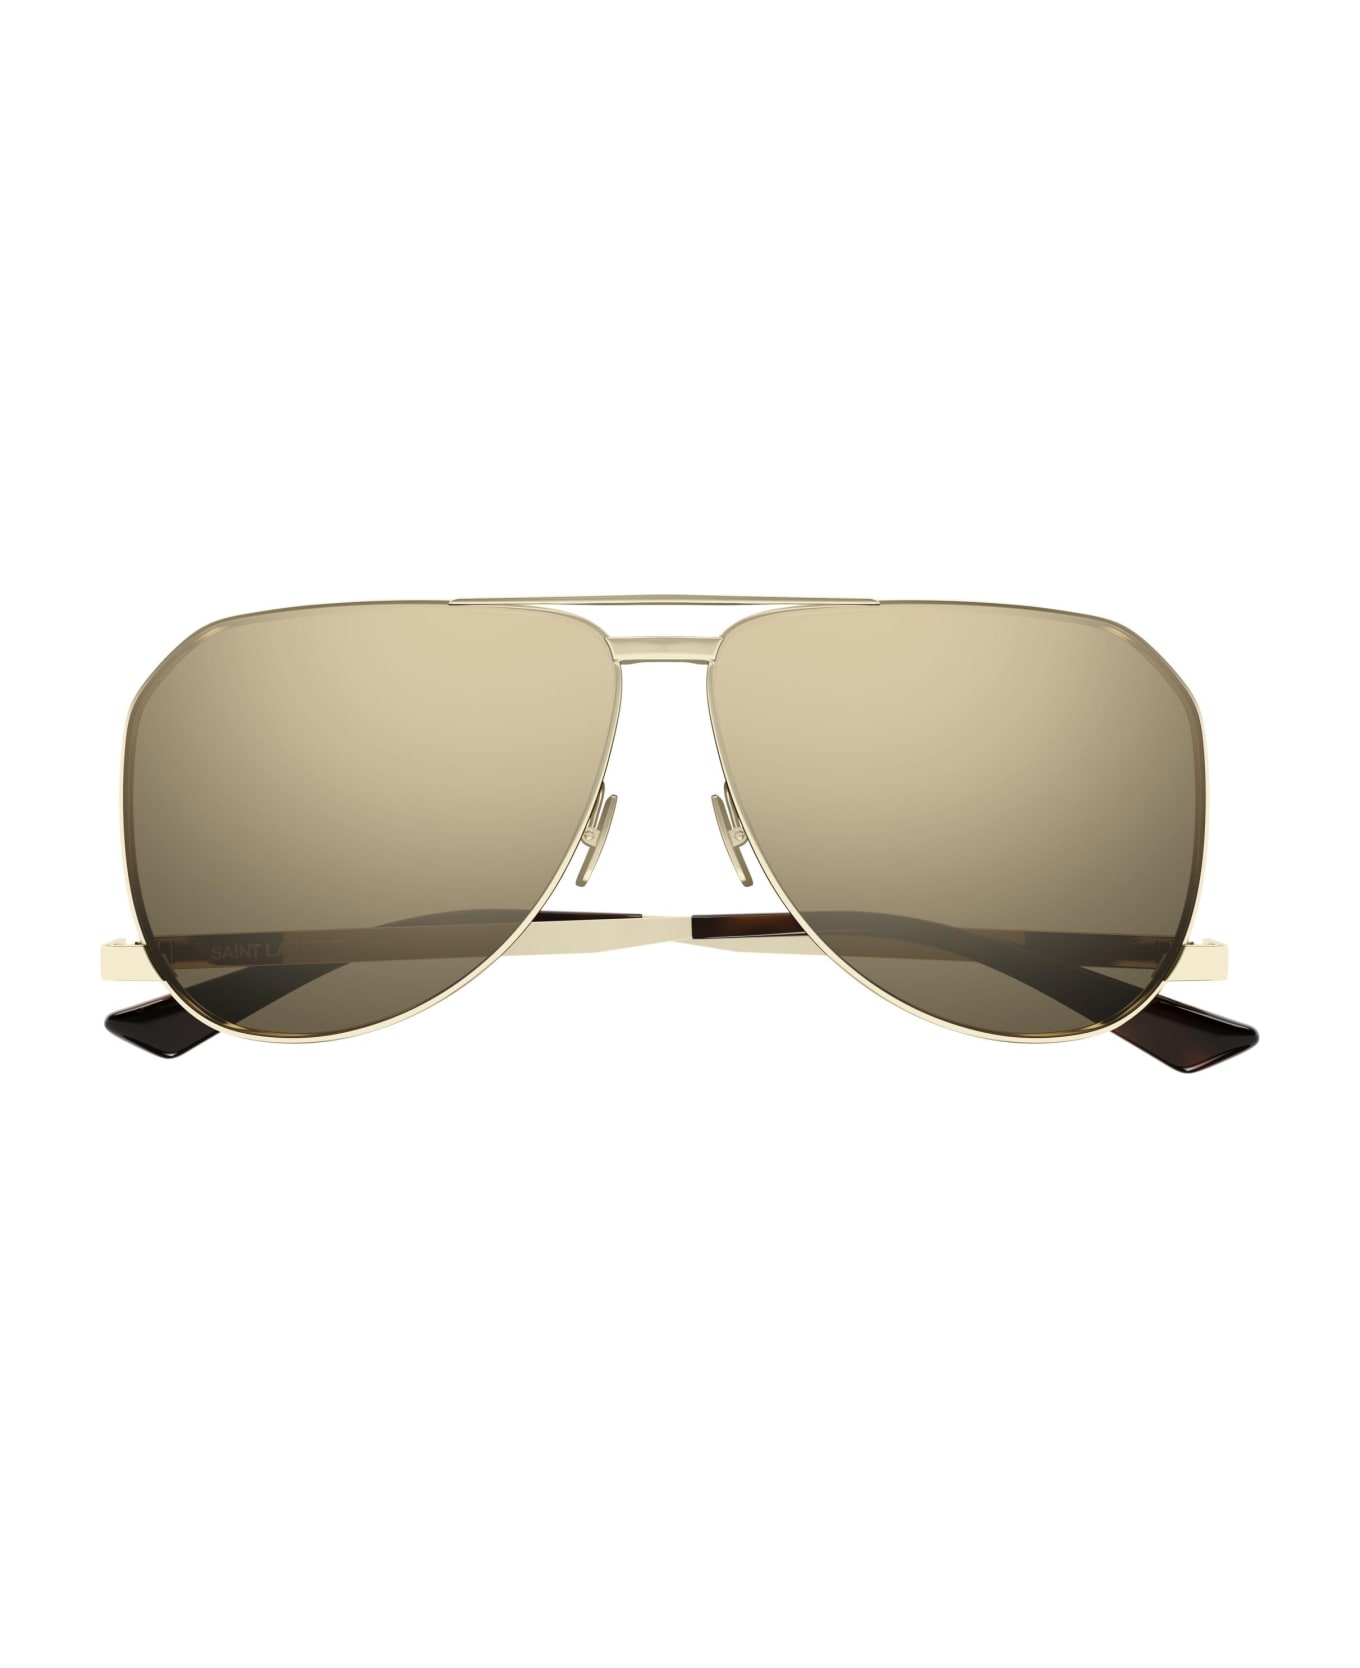 Saint Laurent Eyewear Sunglasses - Oro/Marrone サングラス